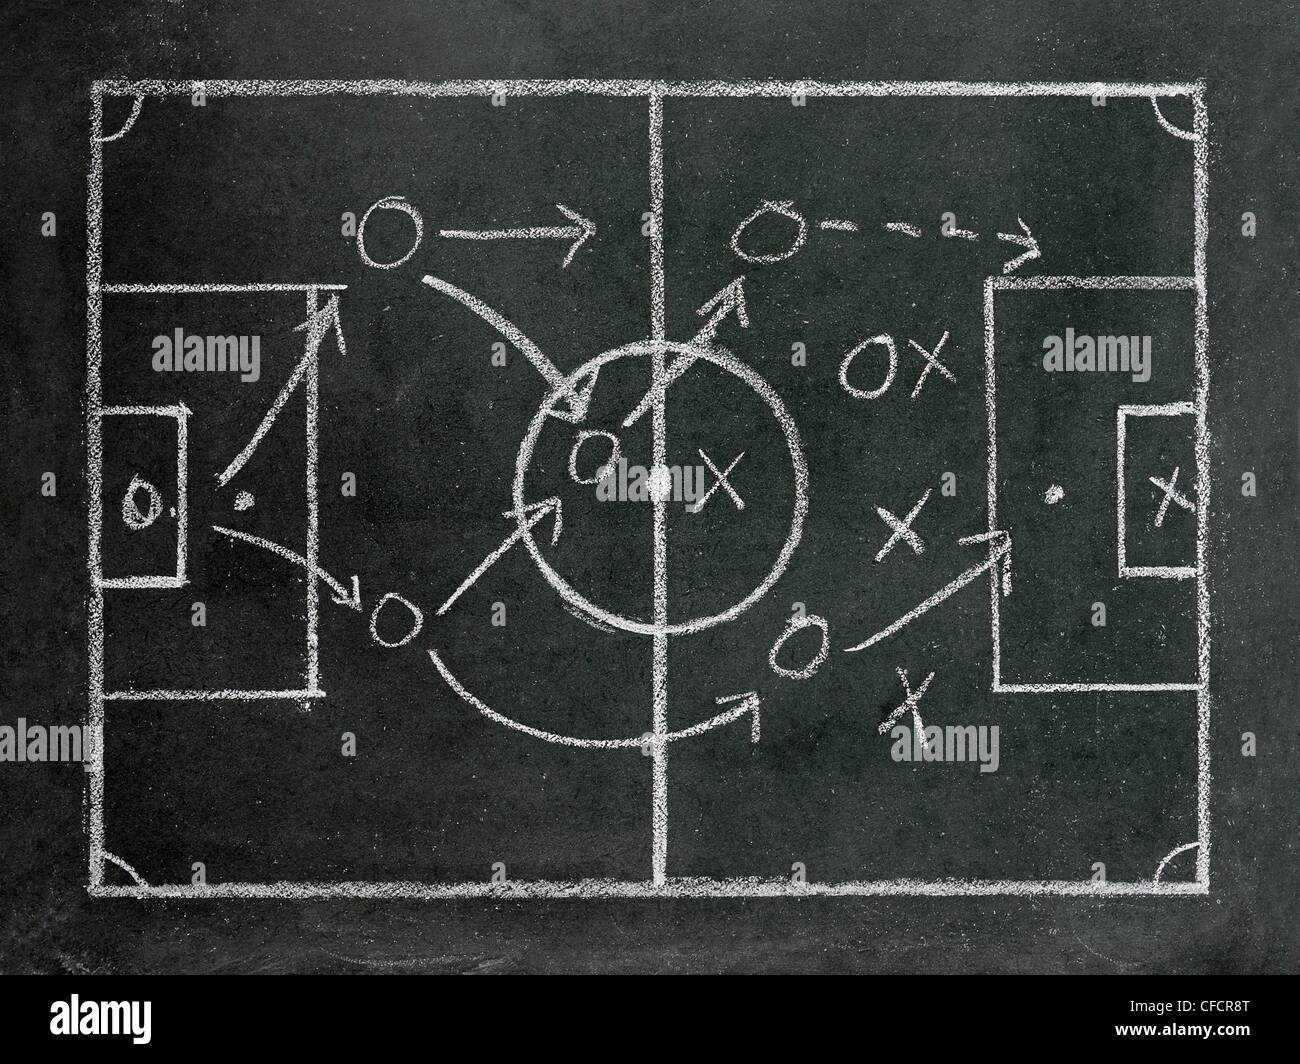 Tácticas de fútbol dibujado en una pizarra. Foto de stock